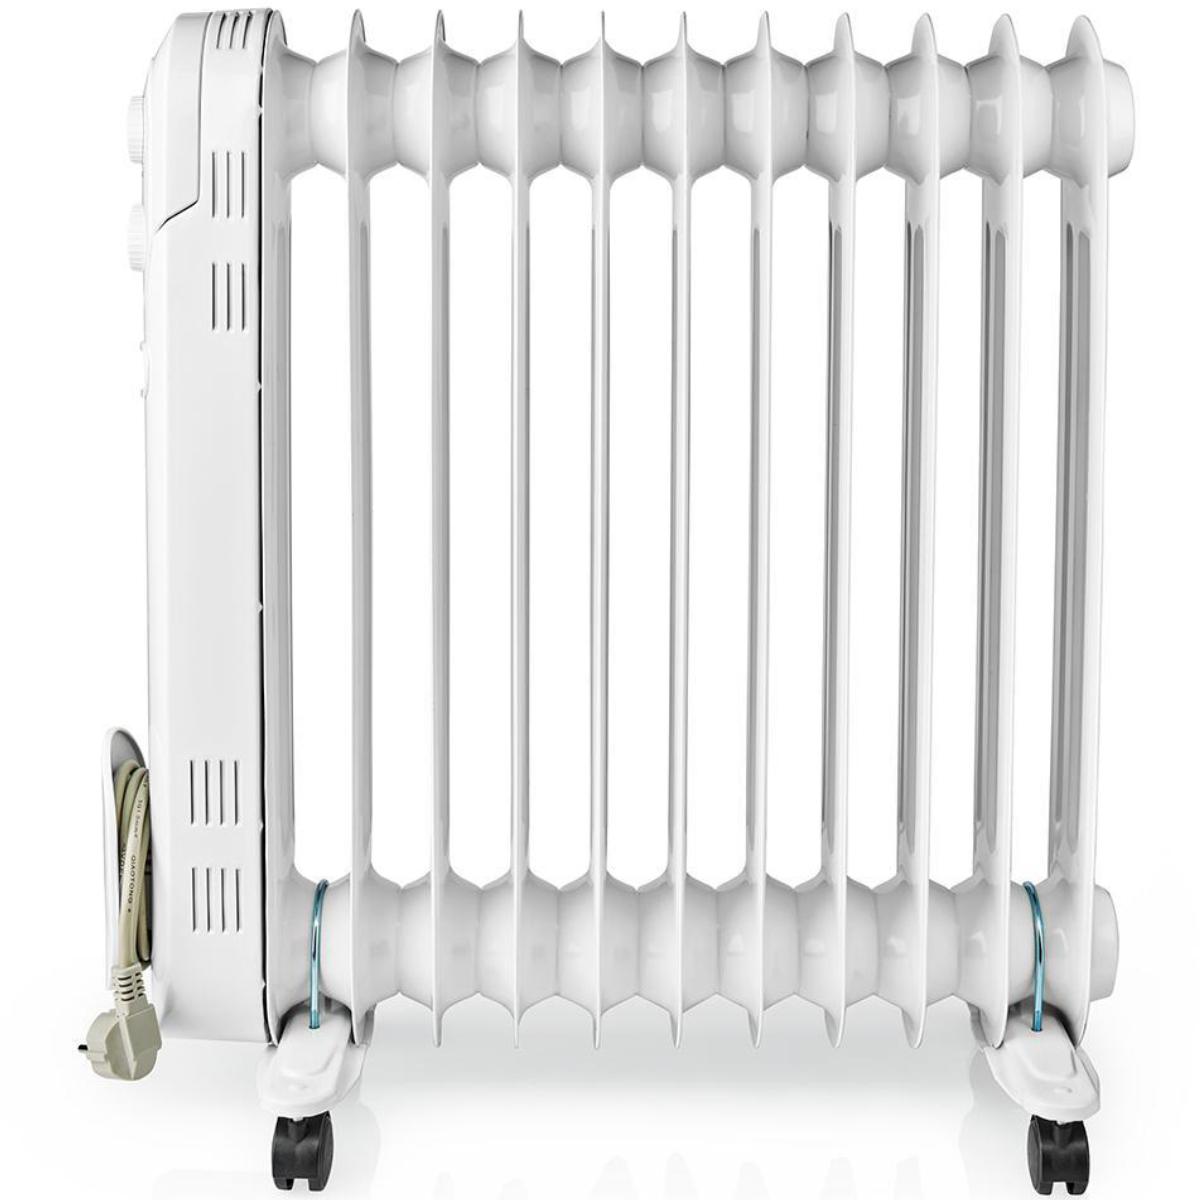 Elektrische - Oliegevulde mobiele radiator die een aanvullende en comfortabele warmtebron vormt die zowel stil als efficiënt is. De radiator voorzien van en een thermostaat om de gewenste